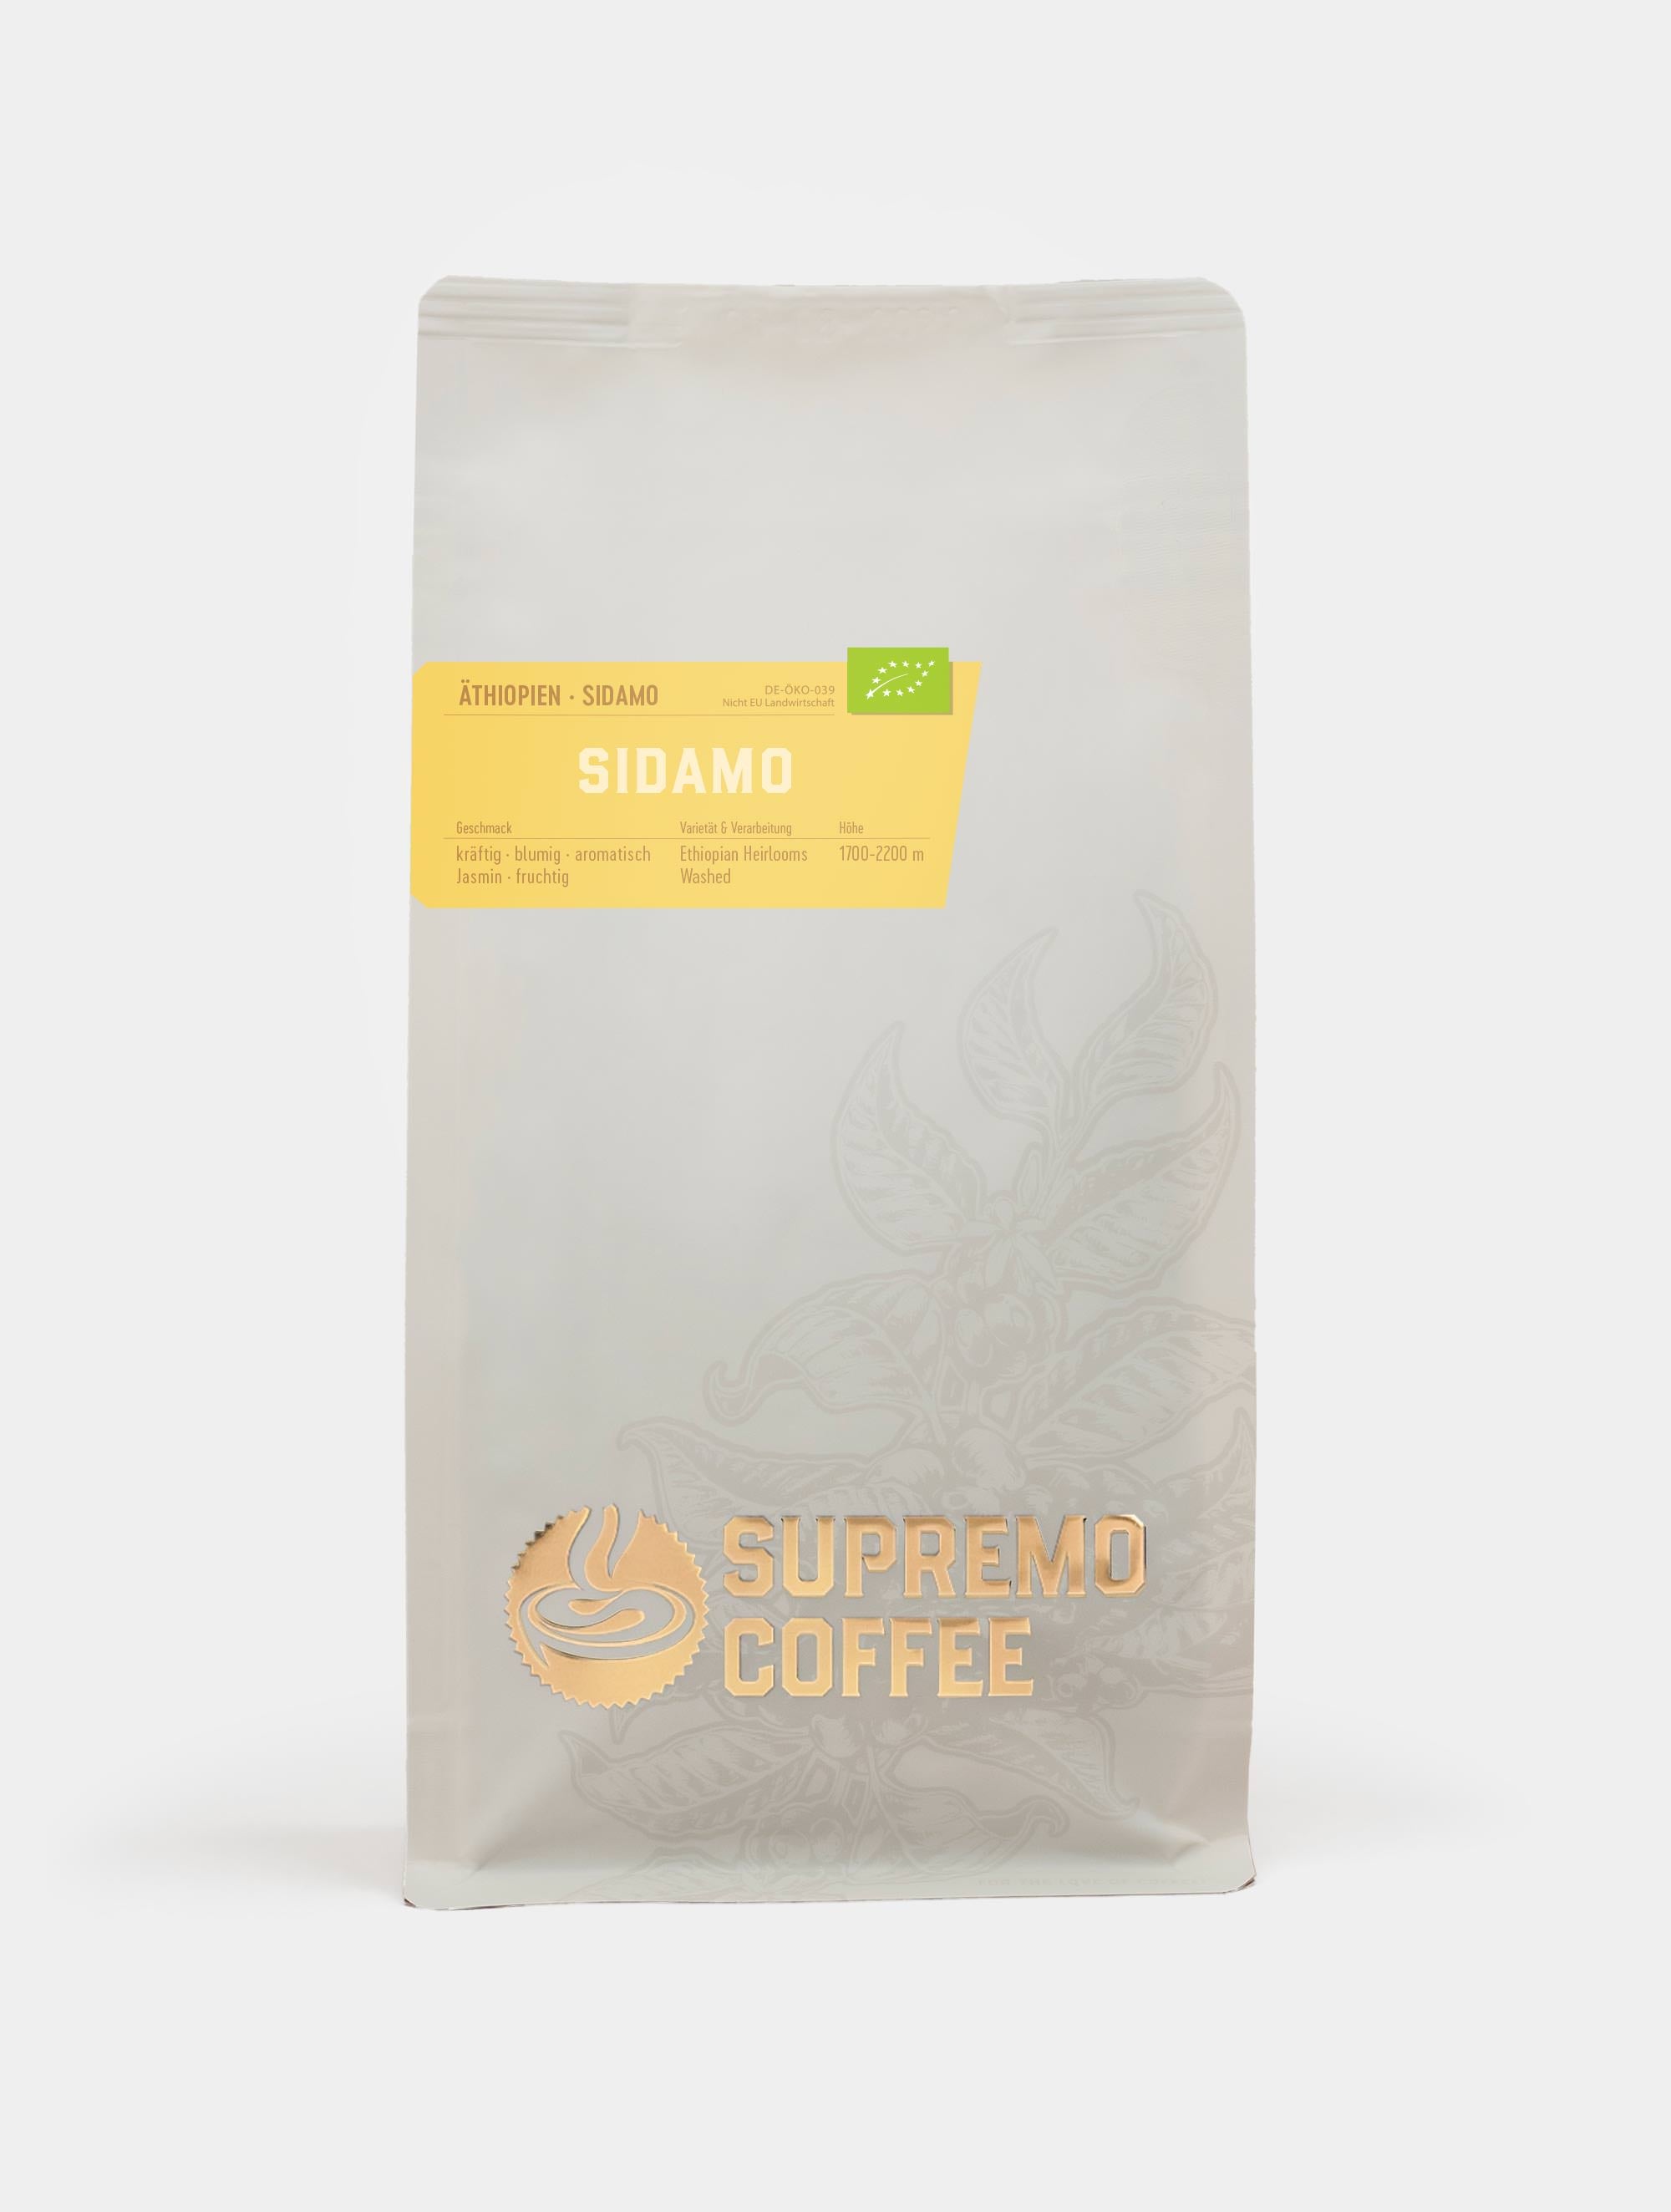 Sidamo, Äthiopien | SUPREMO Coffee